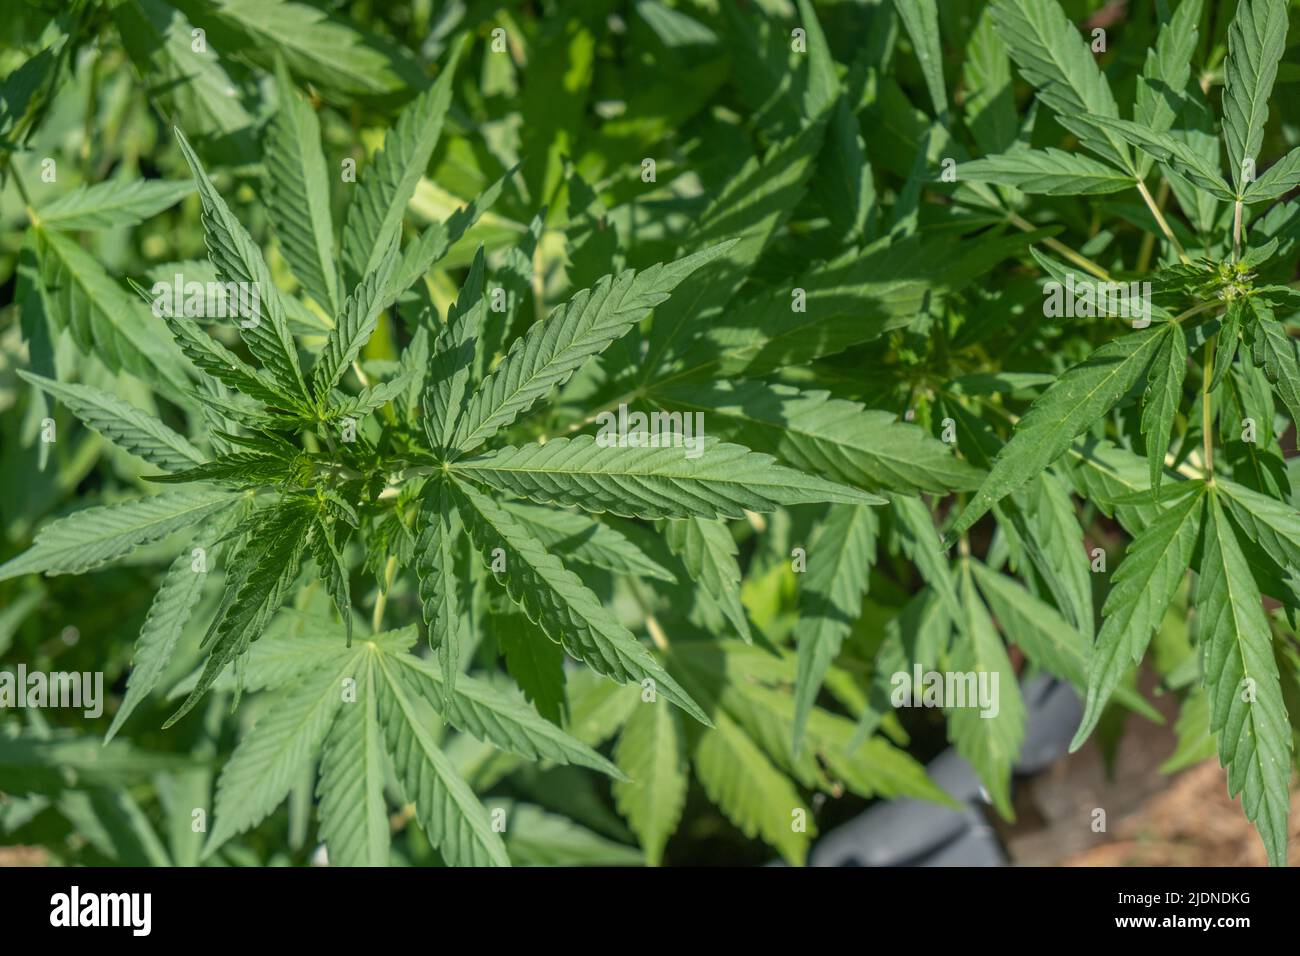 Cannabis / marijuana plantes poussant dans la culture, pour la production d'huile de CBD maison Banque D'Images